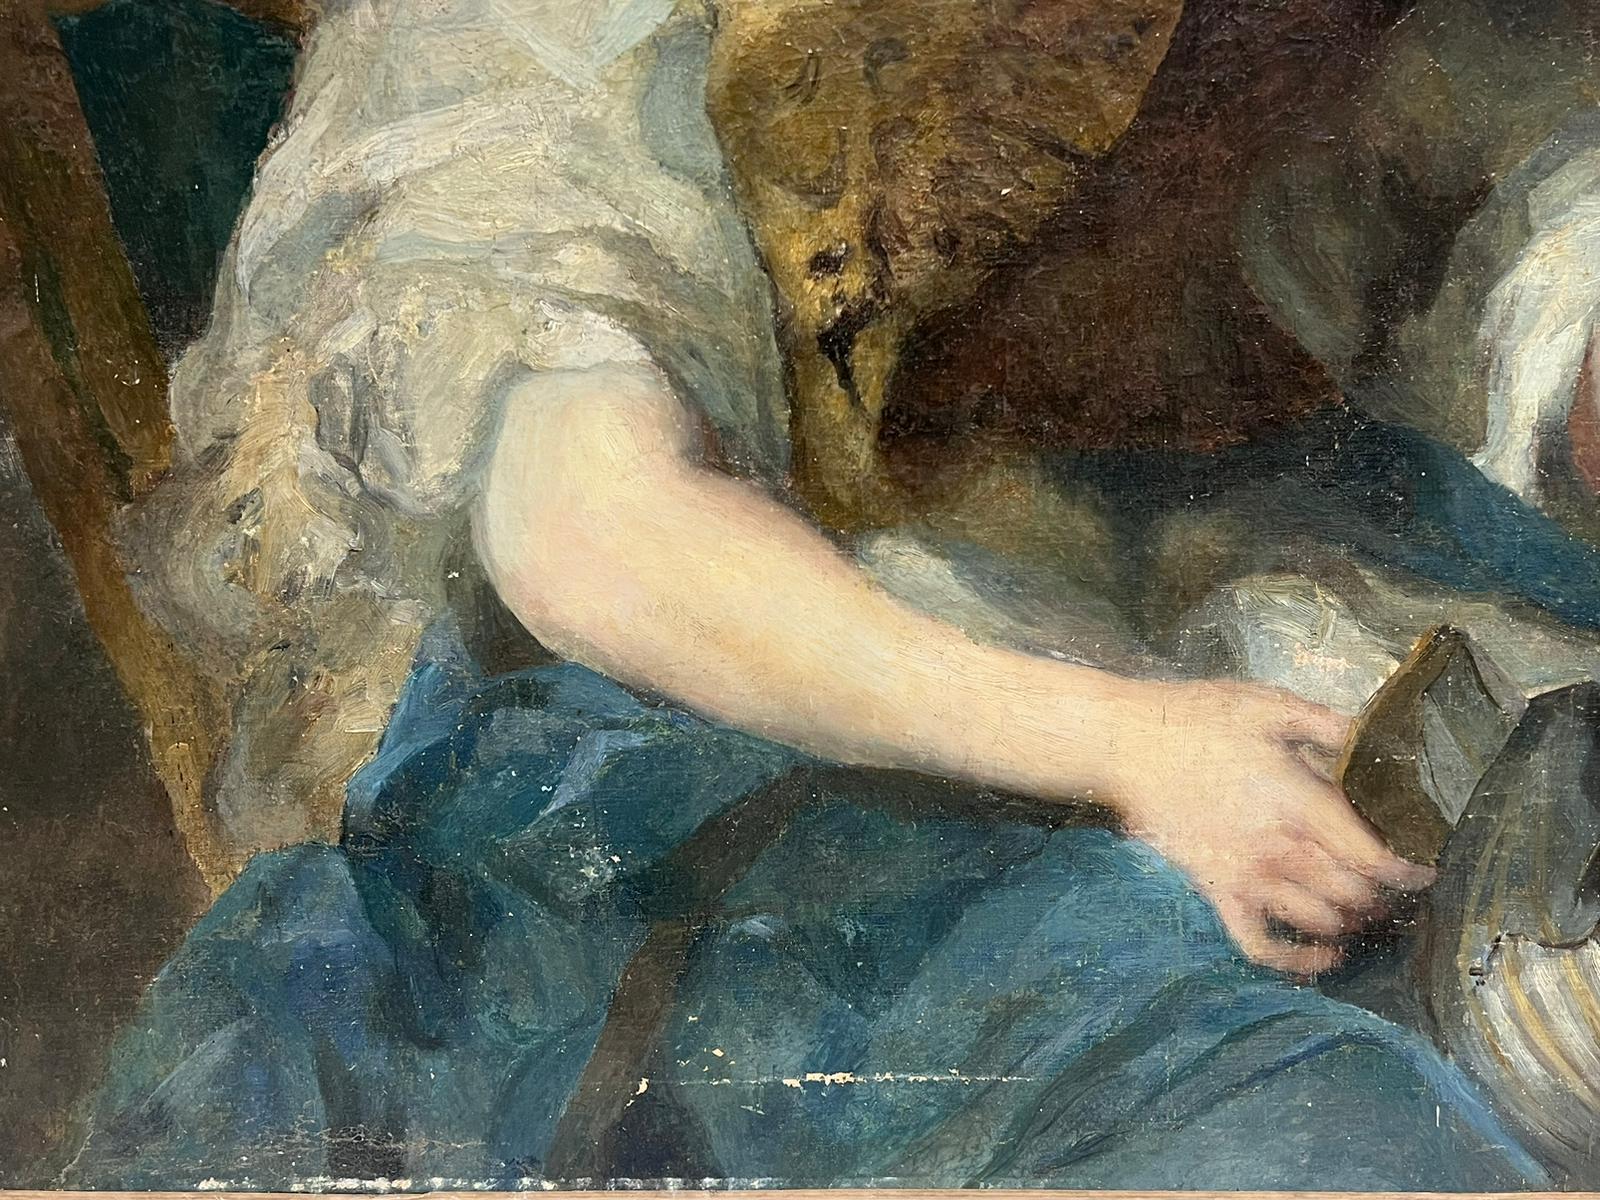 Porträt einer Mutter und eines Sohnes
Französische Schule, 19. Jahrhundert - nach einem früheren Gemälde des 18. Jahrhunderts aus der Rokokozeit. 
Ölgemälde auf Leinwand, ungerahmt
Leinwand: 38,75 x 49,5 Zoll
Provenienz: Privatsammlung,